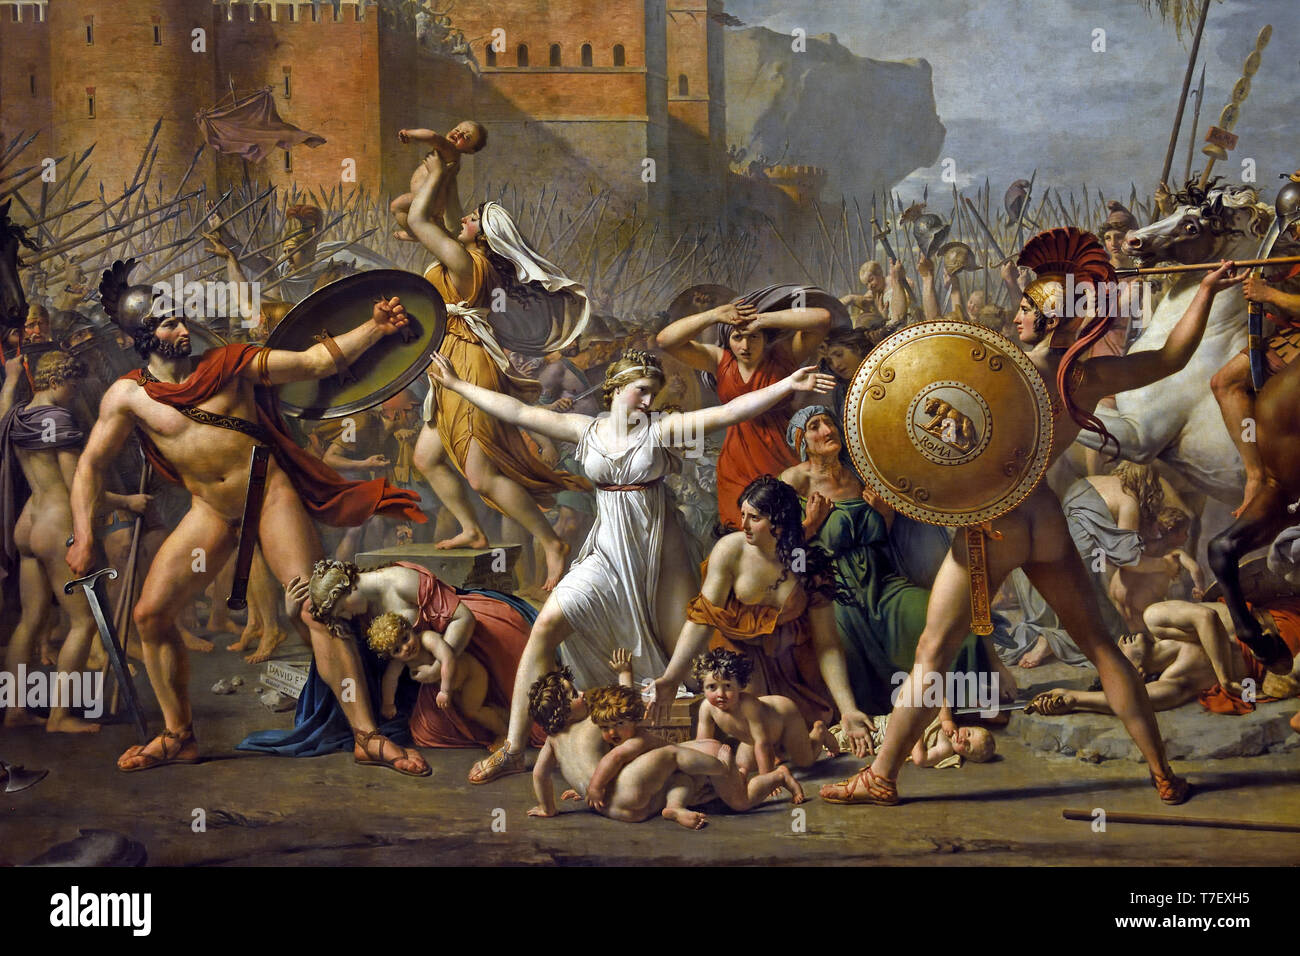 L intervento di Sabine 1799 dipinto da Jacques-Louis David 1748 pittore francese in Francia. (Che mostra un episodio leggendario in seguito al rapimento di Sabine dalla generazione dei fondatori di Roma) Foto Stock